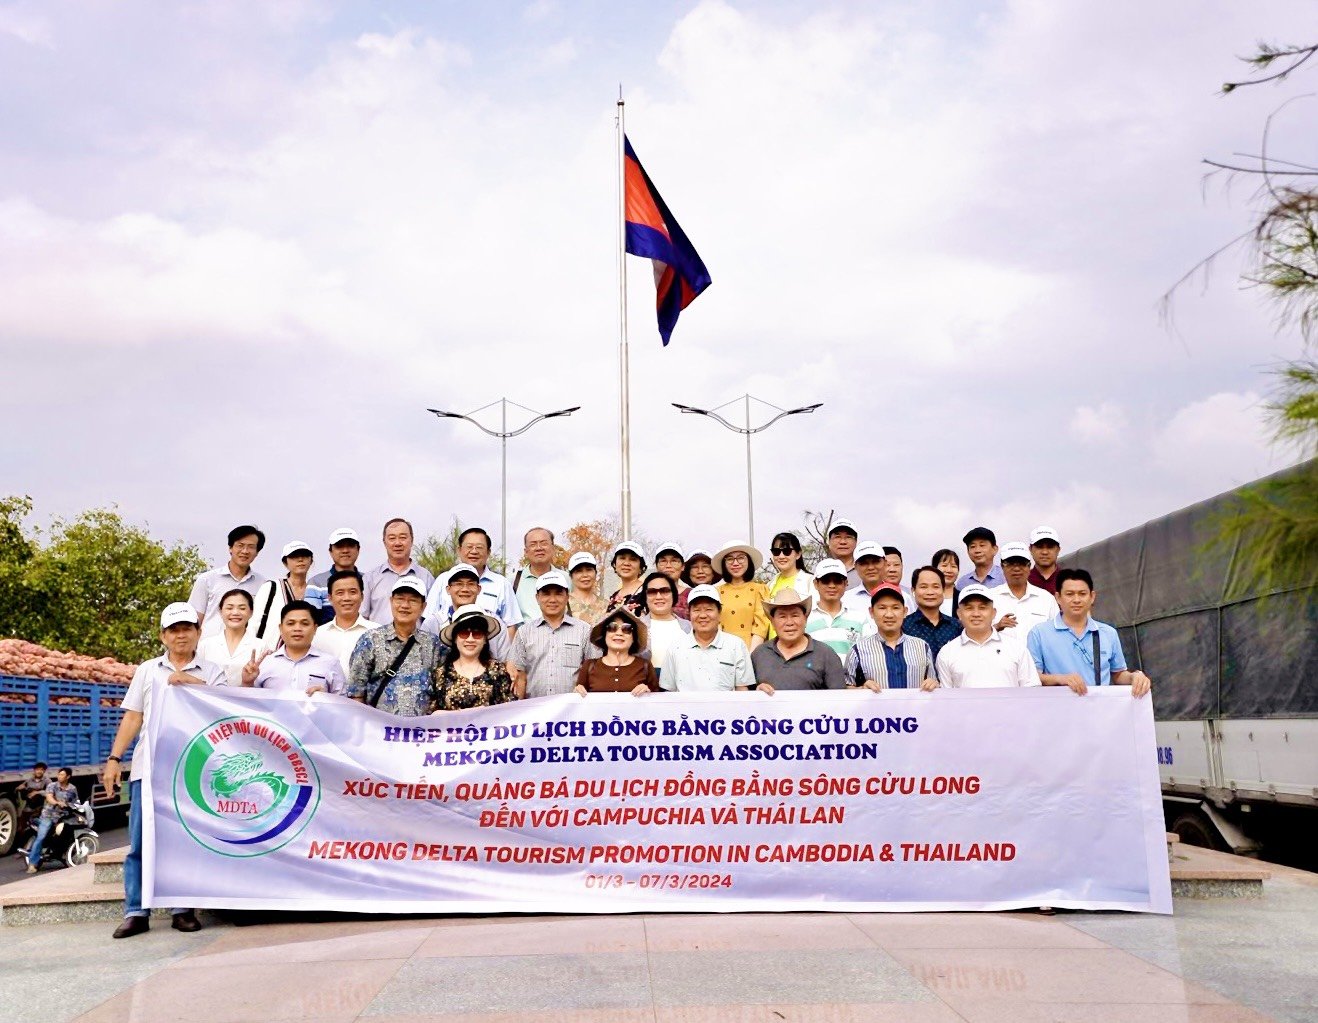 Hiệp hội du lịch ĐBSCL tổ chức Hội nghị Xúc tiến, quảng bá du lịch ĐBSCL tại Bangkok Thái Lan